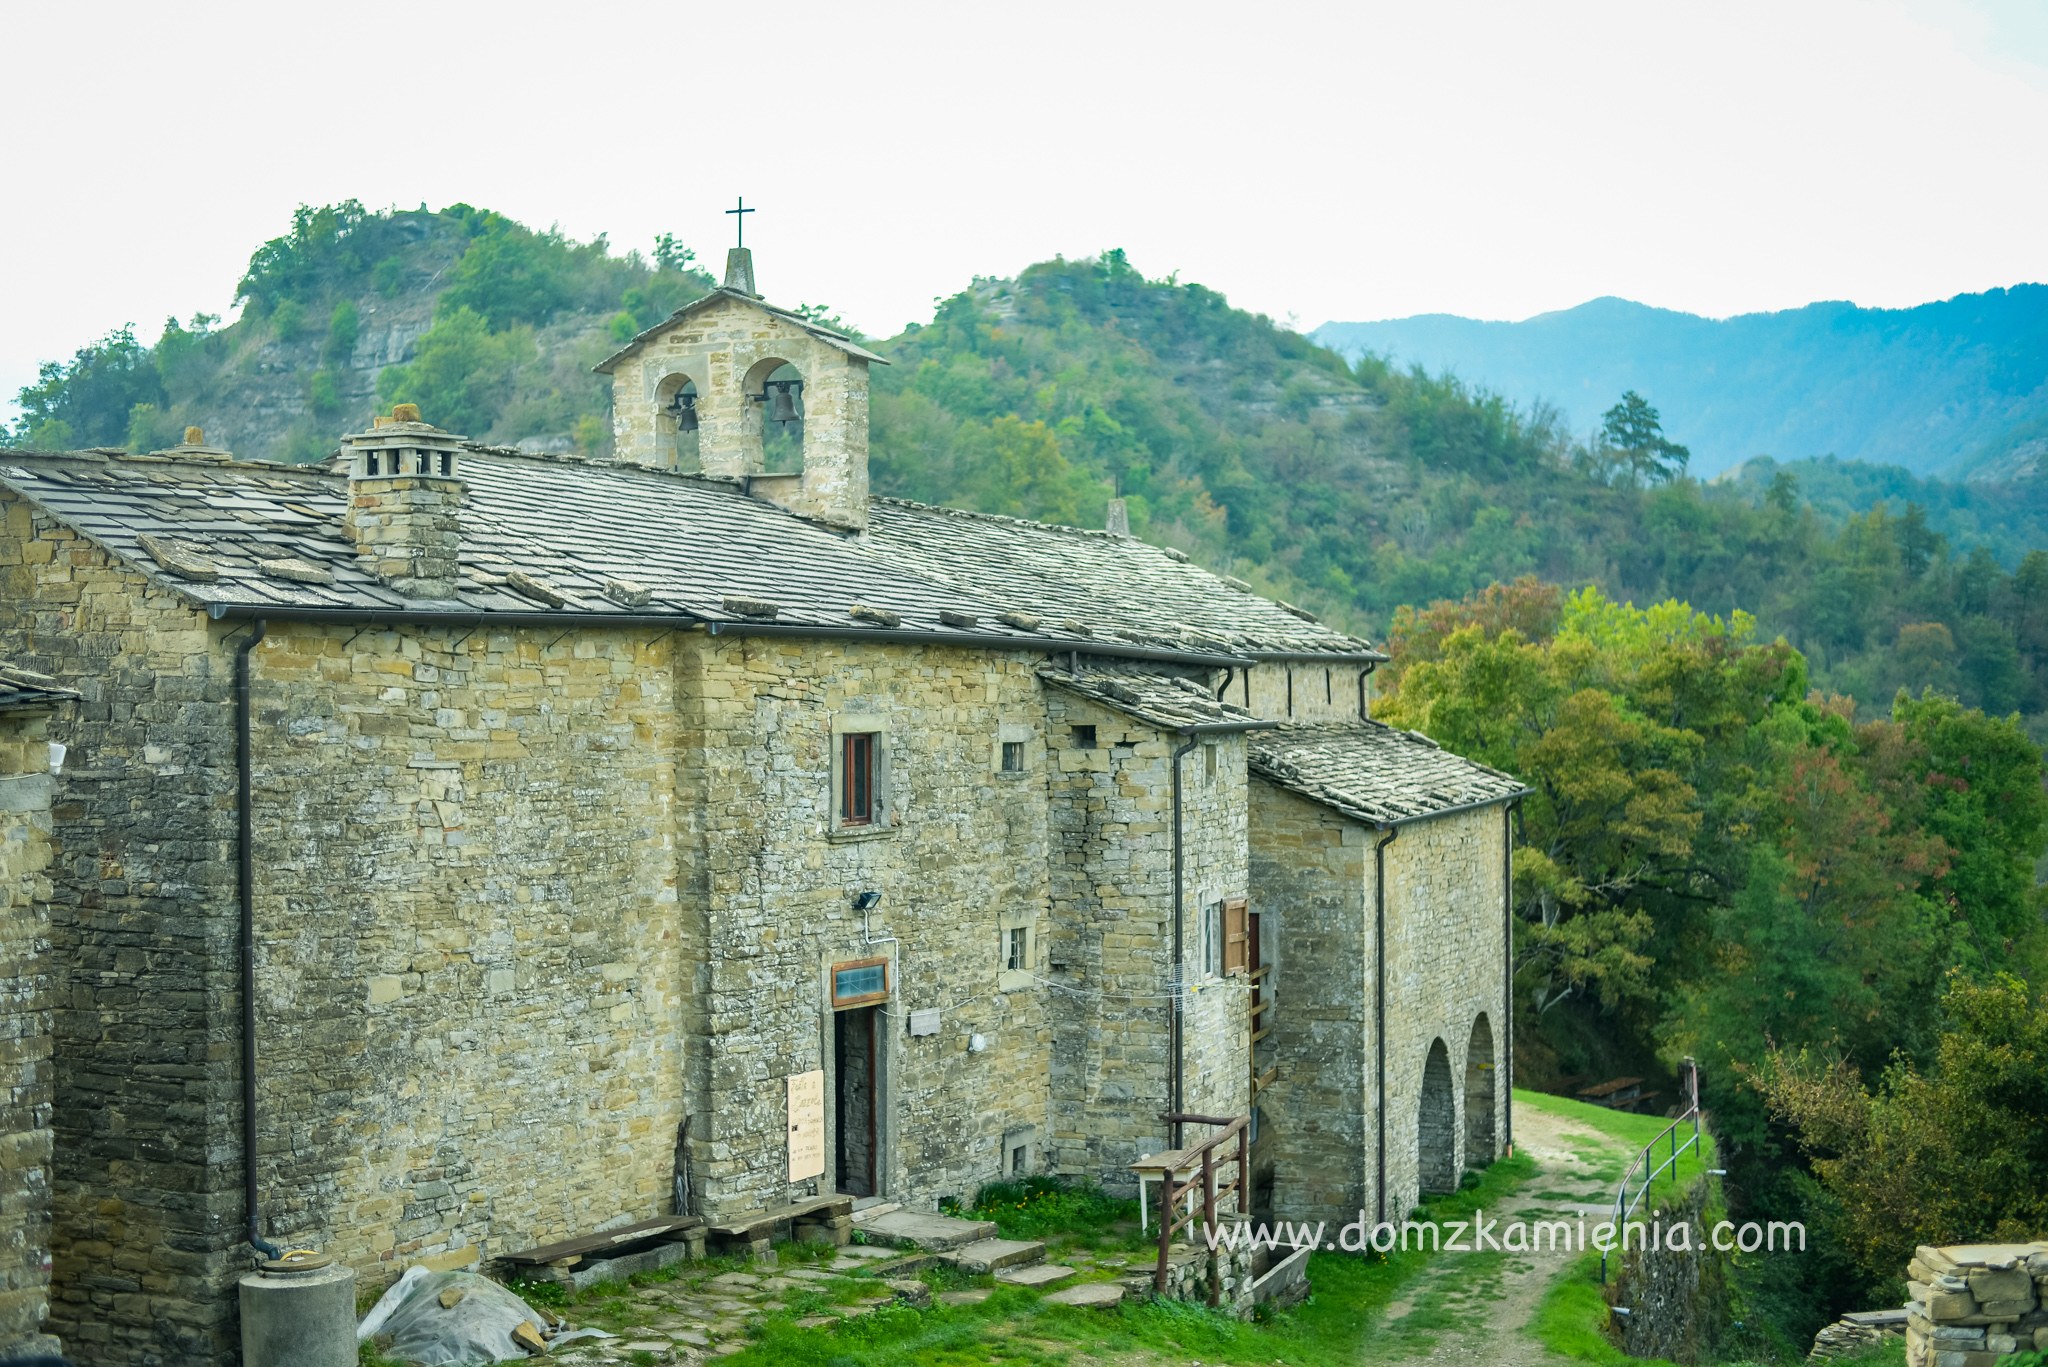 Dom z Kamienia blog, Toskania, warsztaty kulinarne, trekking